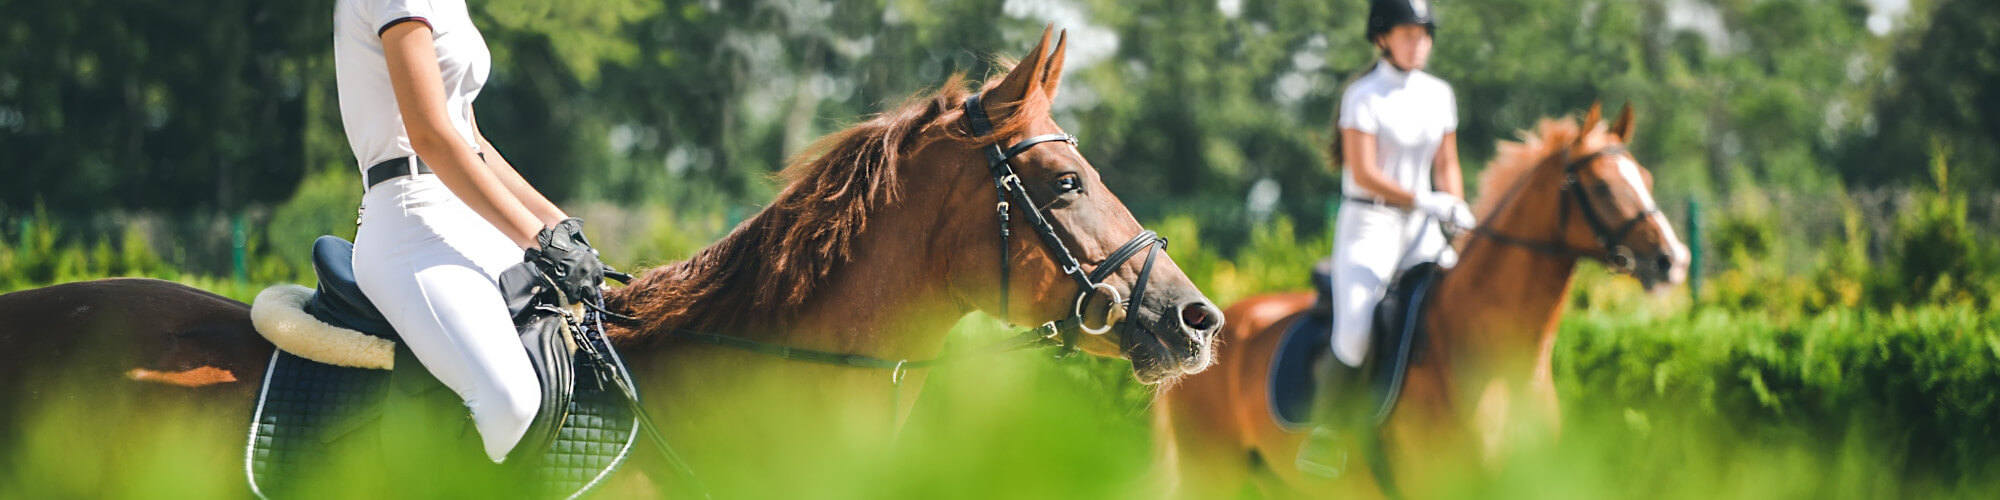 Insektenschutzmittel für Pferd und Reiter